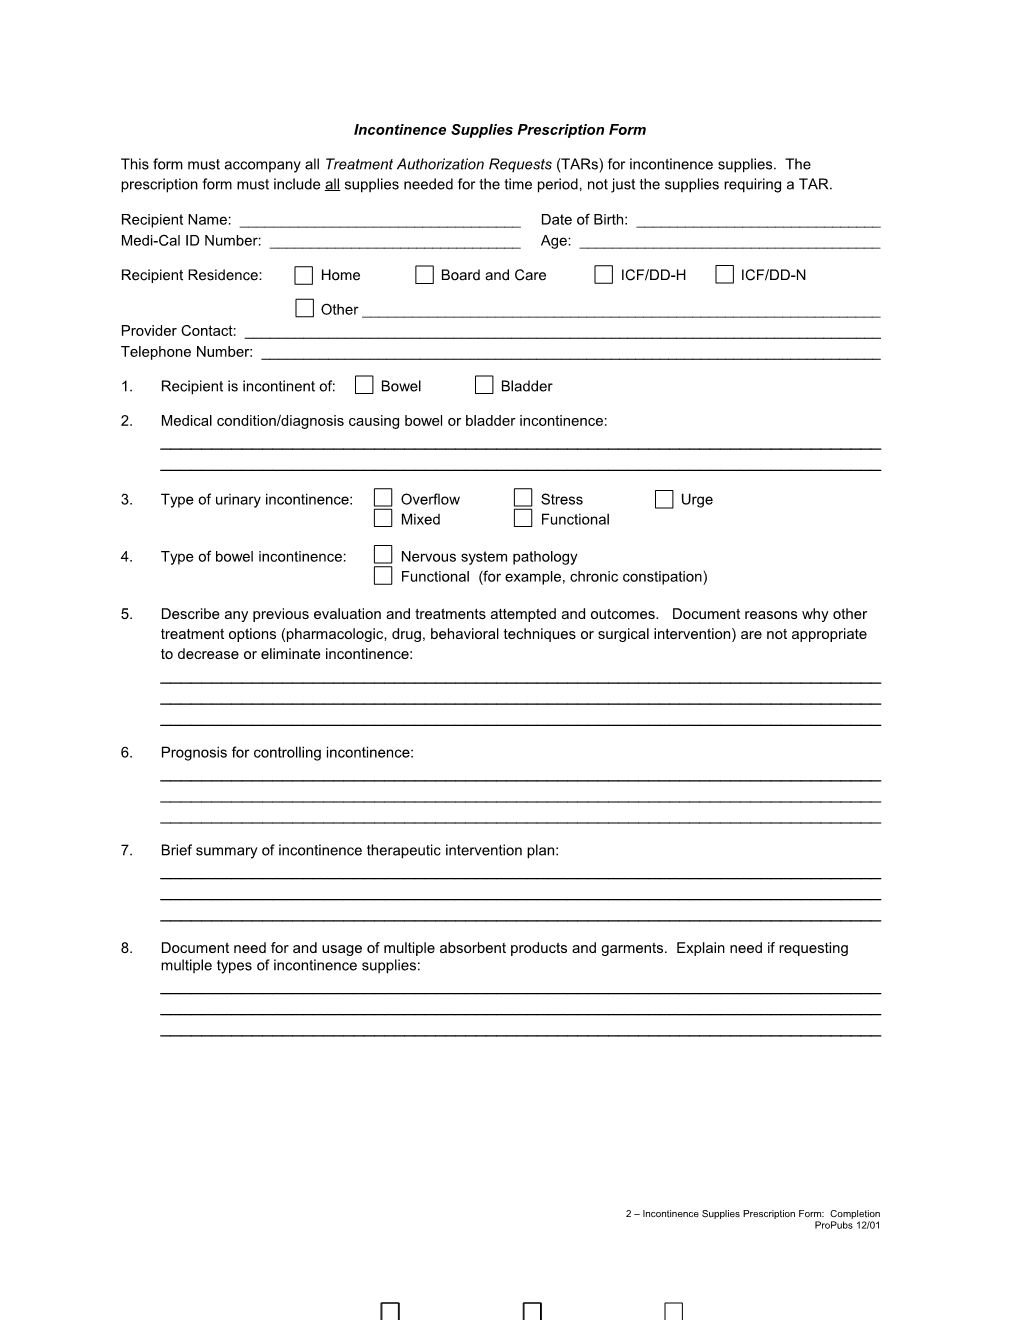 Form: Incontinence Supplies Prescription Form